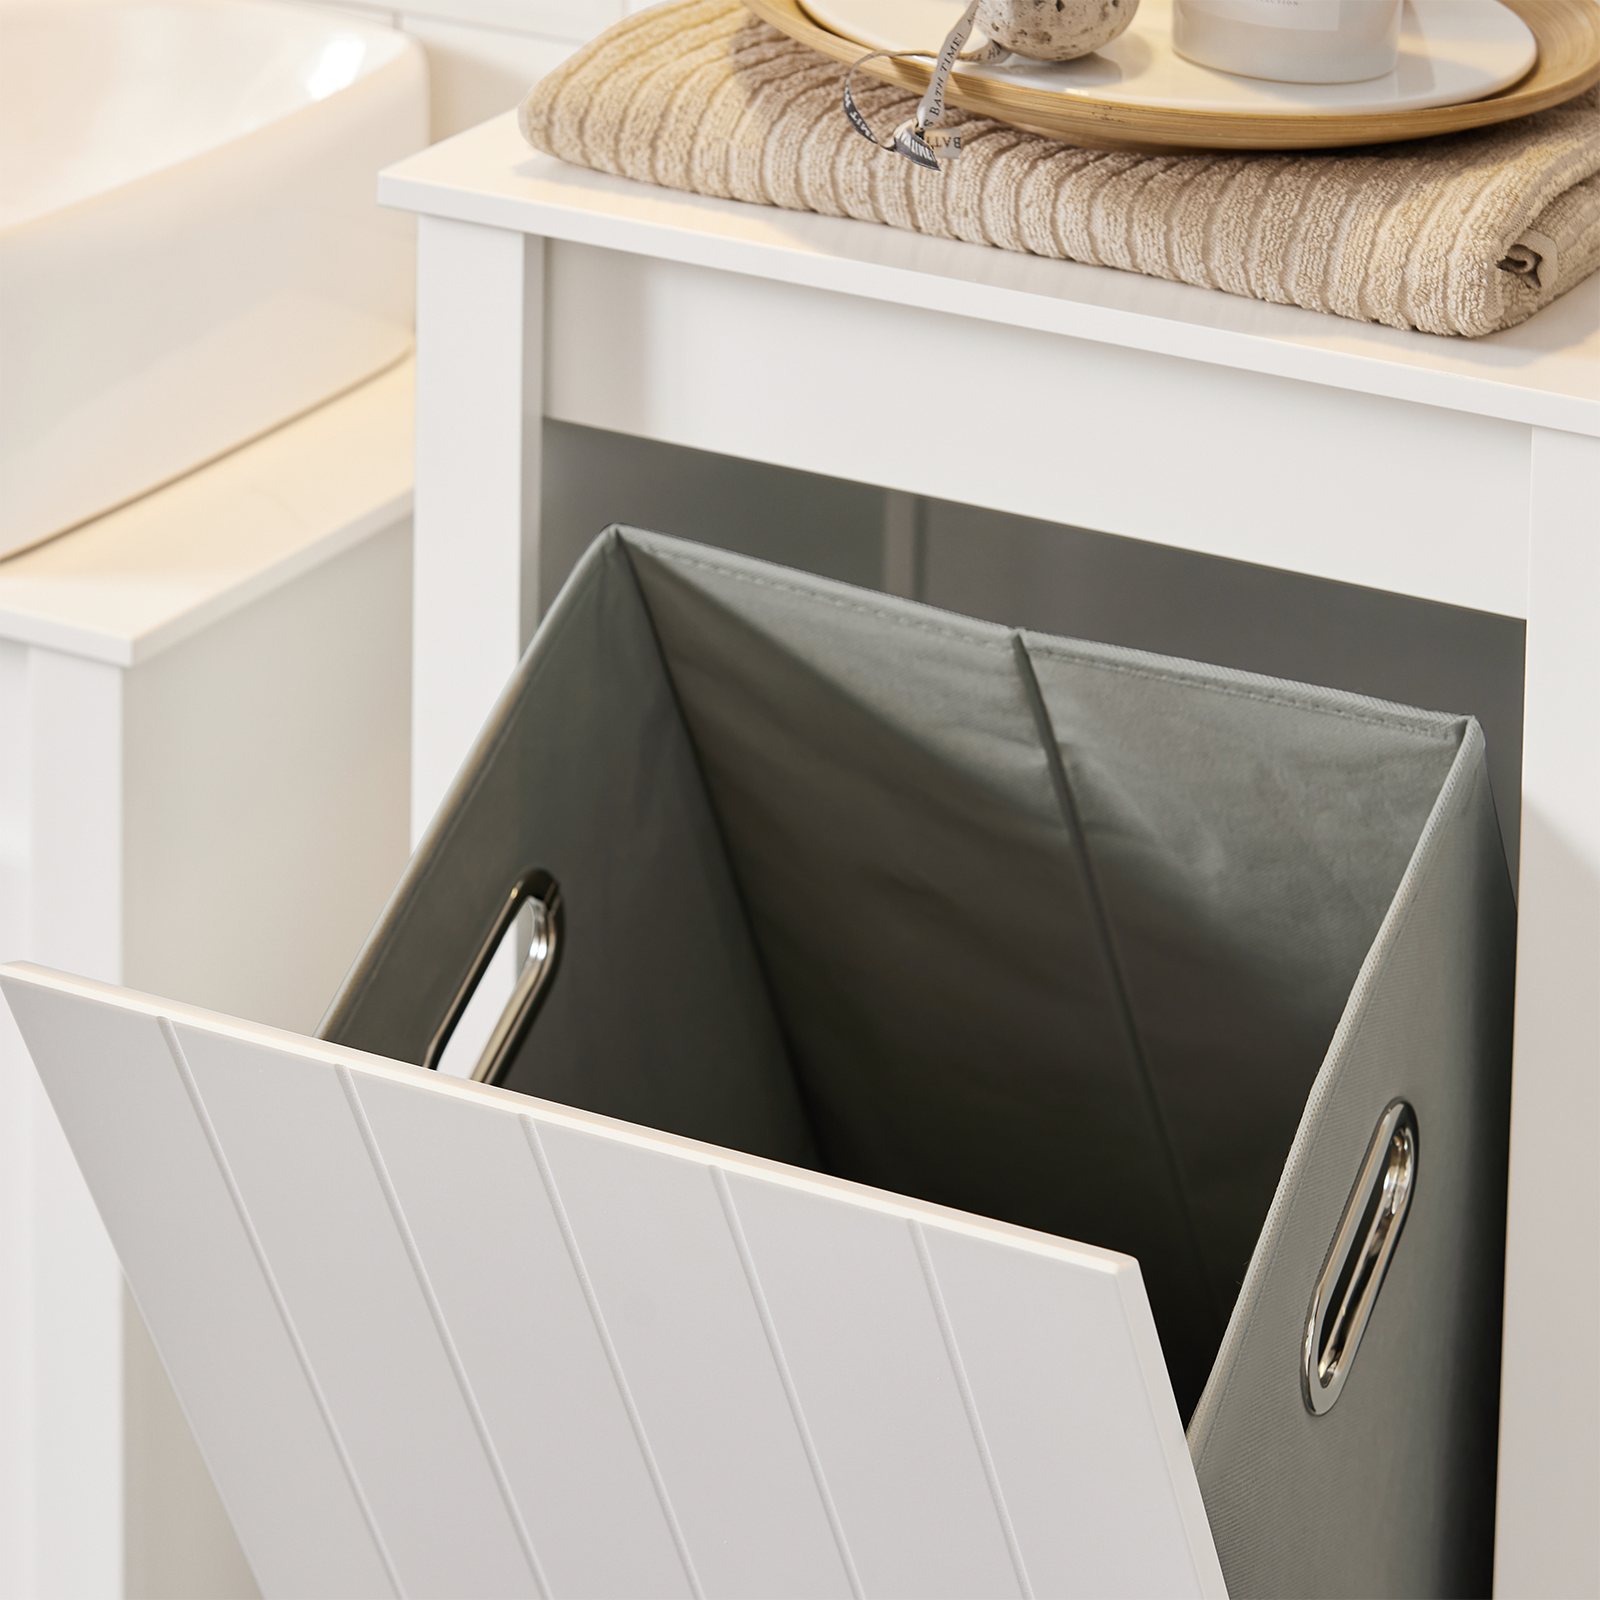 SoBuy BZR102-W Bathroom Tall Cabinet Cupboard Bathroom Storage Cabinet with Laundry Basket